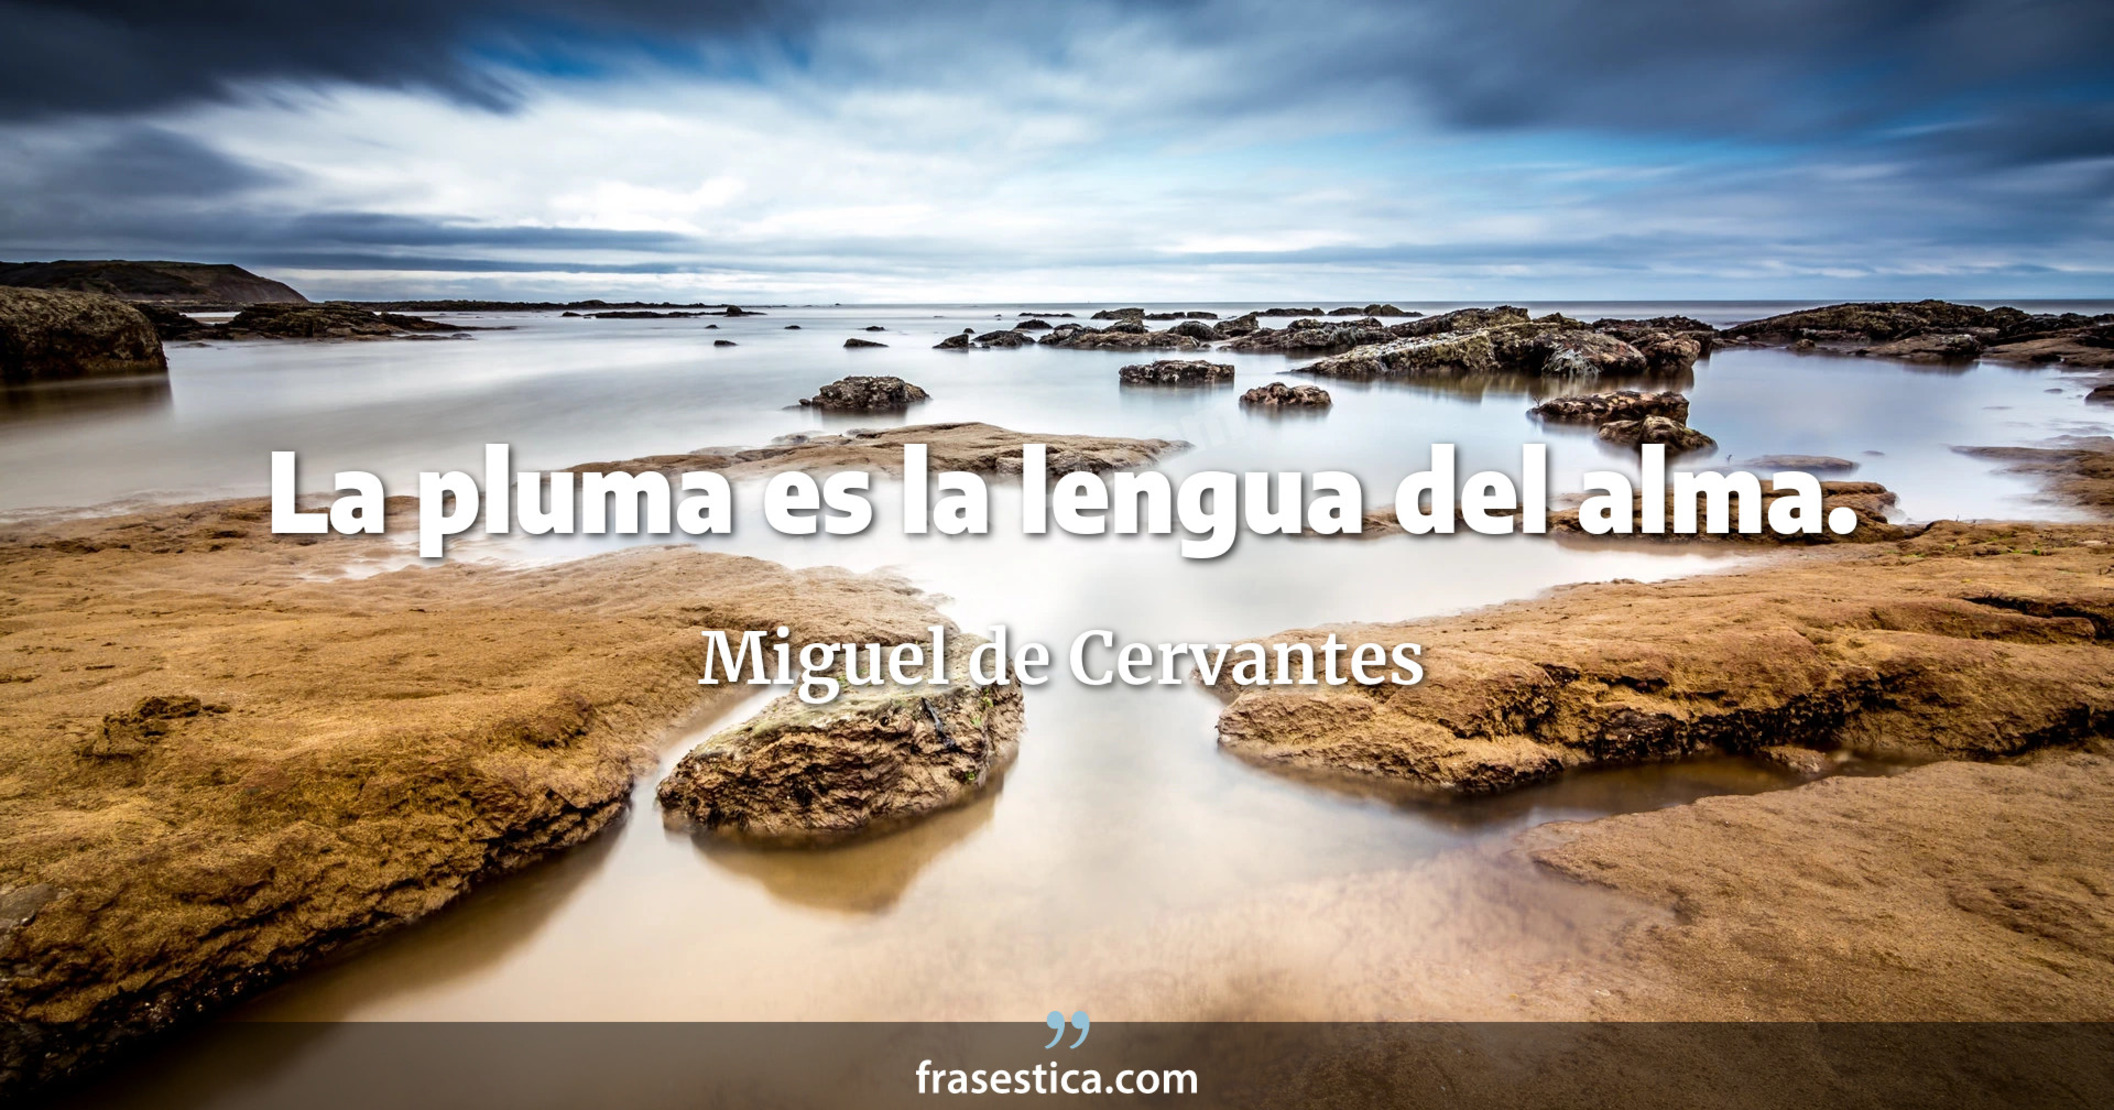 La pluma es la lengua del alma. - Miguel de Cervantes